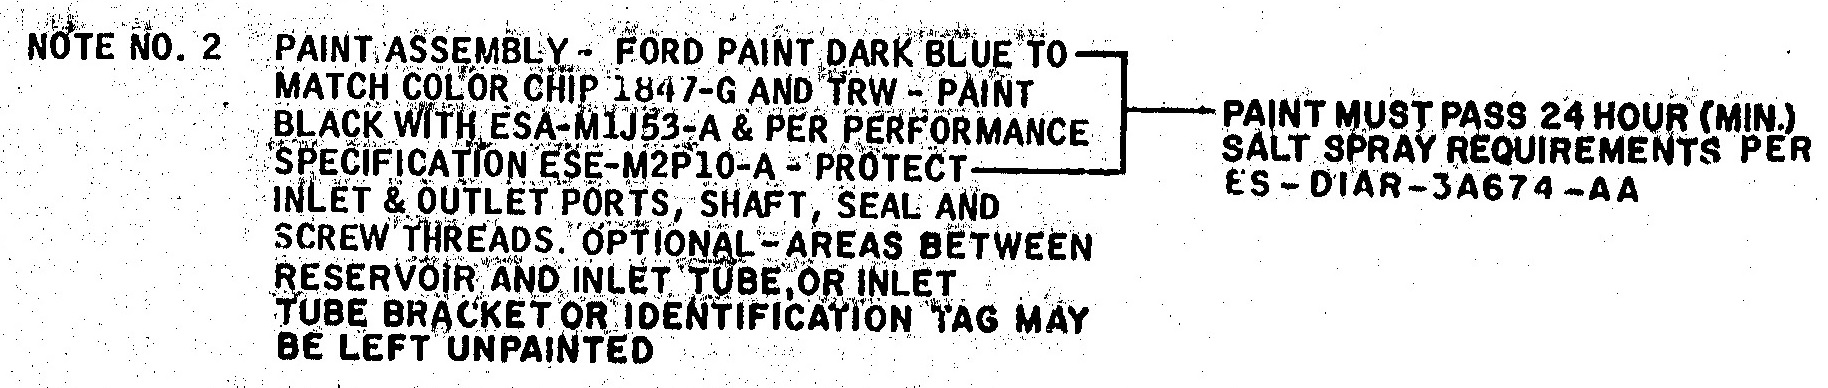 1970 Power Steering Pump paint note